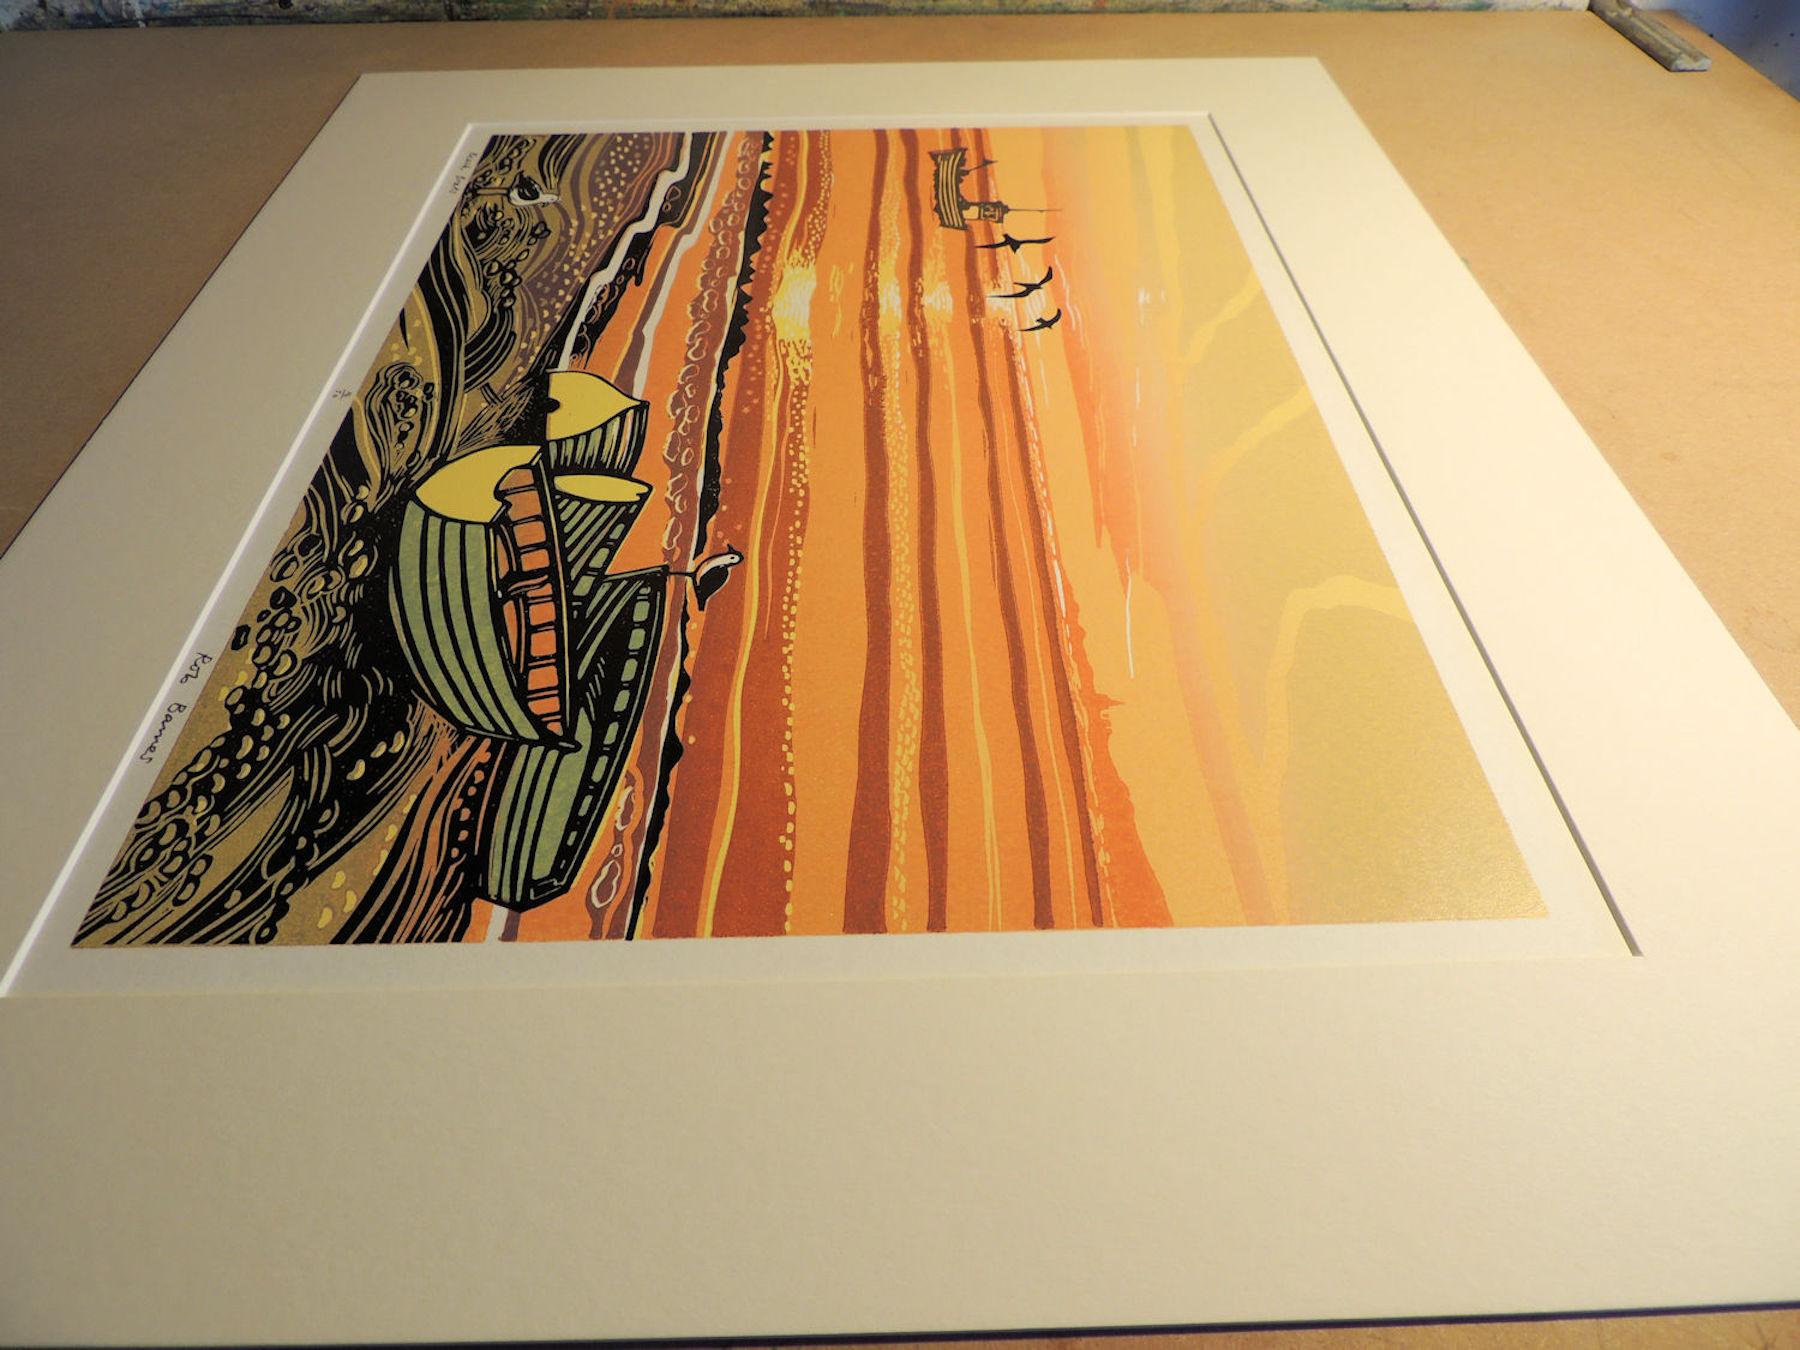 Strandboote aus Norfolk, Meereslandschaftskunst, Linolschnittdrucke aus England, Meereskunst (Orange), Still-Life Print, von Rob Barnes